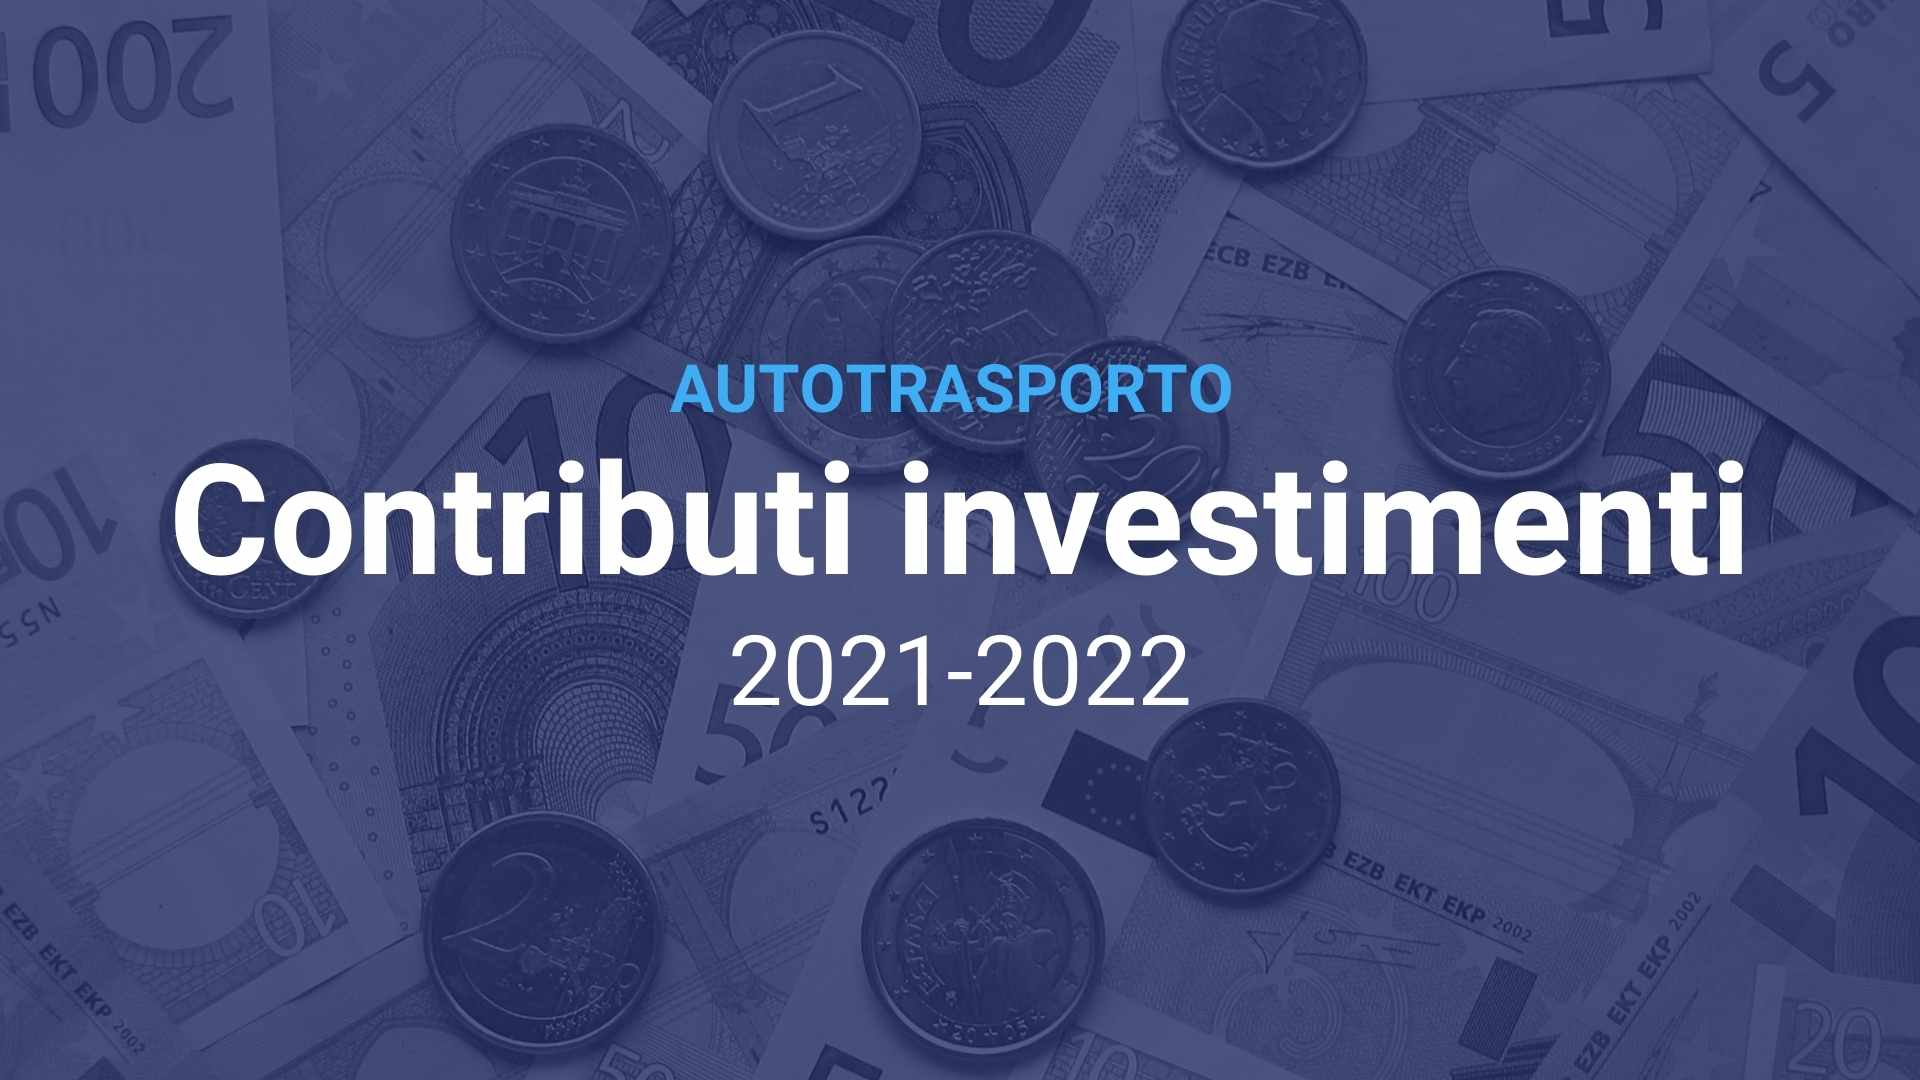 Autotrasporto Investimenti 2021 2022 v2